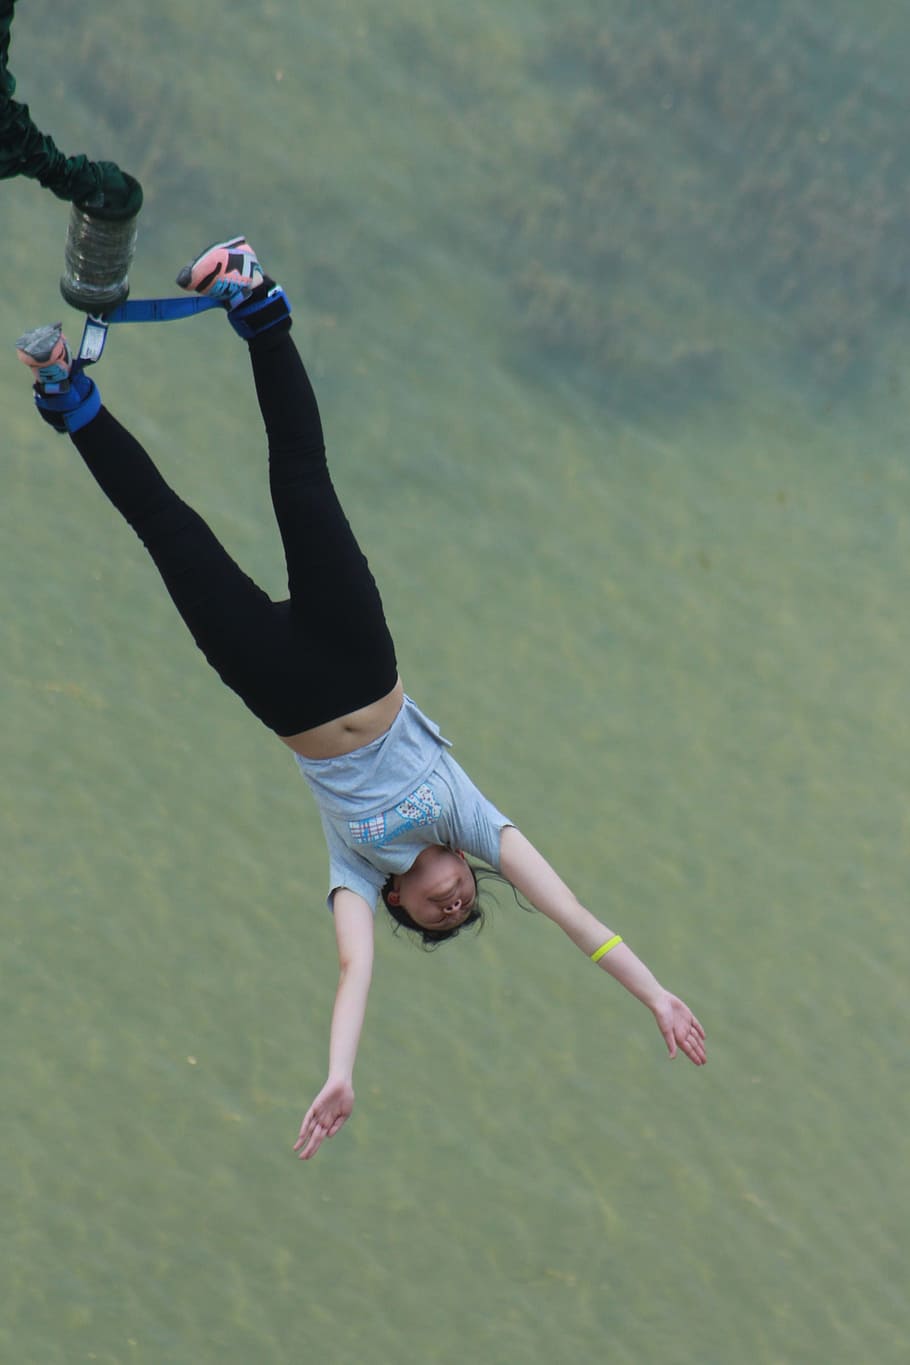 bungee jumping, lompat, berani, satu orang, gaya hidup, aktivitas rekreasi, orang sungguhan, air, hari, panjang penuh